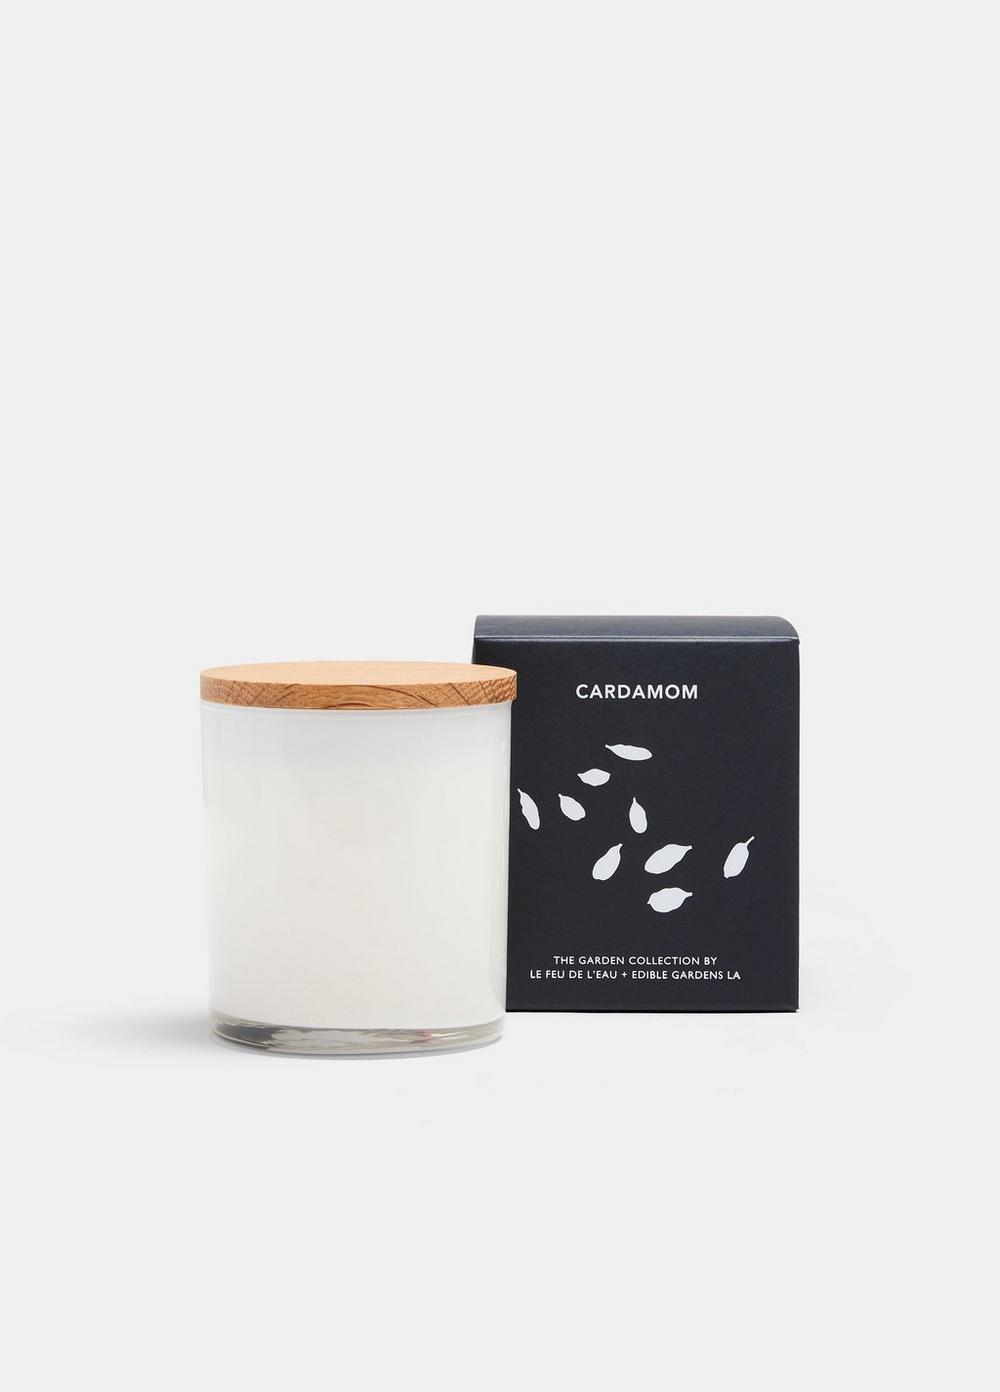 LE FEU DE L'EAU Full Size Cardamom Candle